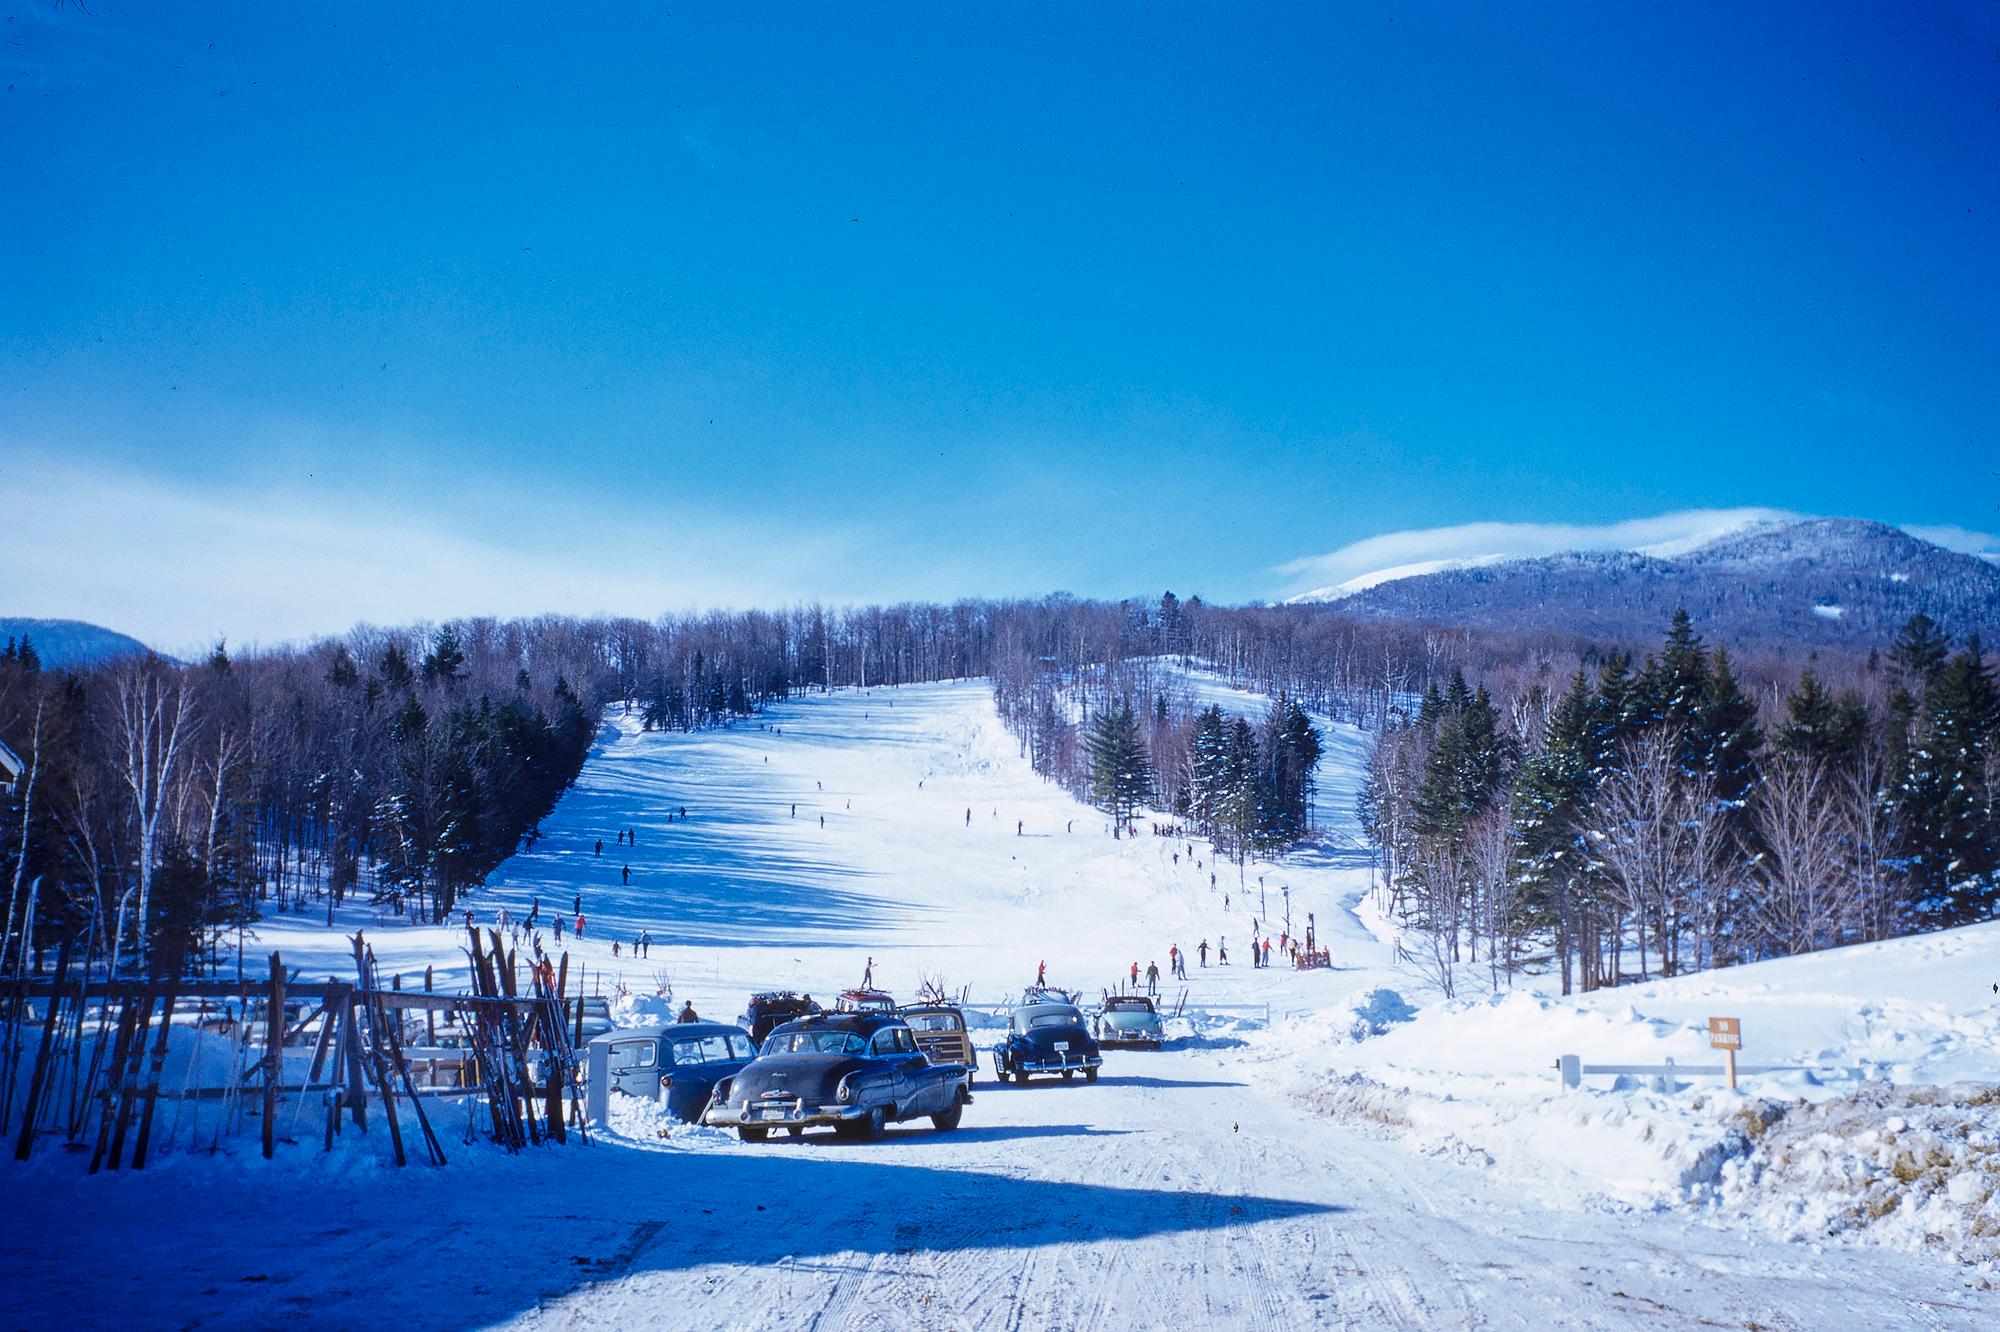 Stowe-Skipiste
1955

Am Fuße einer Skipiste geparkte Autos im Skigebiet Stowe Mountain, Vermont, USA, 1955.
von Toni Frissell

Sehr großes Papierformat 40 x 30" Zoll / 101 x 76 cm 
Archivierungs-Pigmentdruck
ungerahmt 
(Einrahmung möglich - siehe